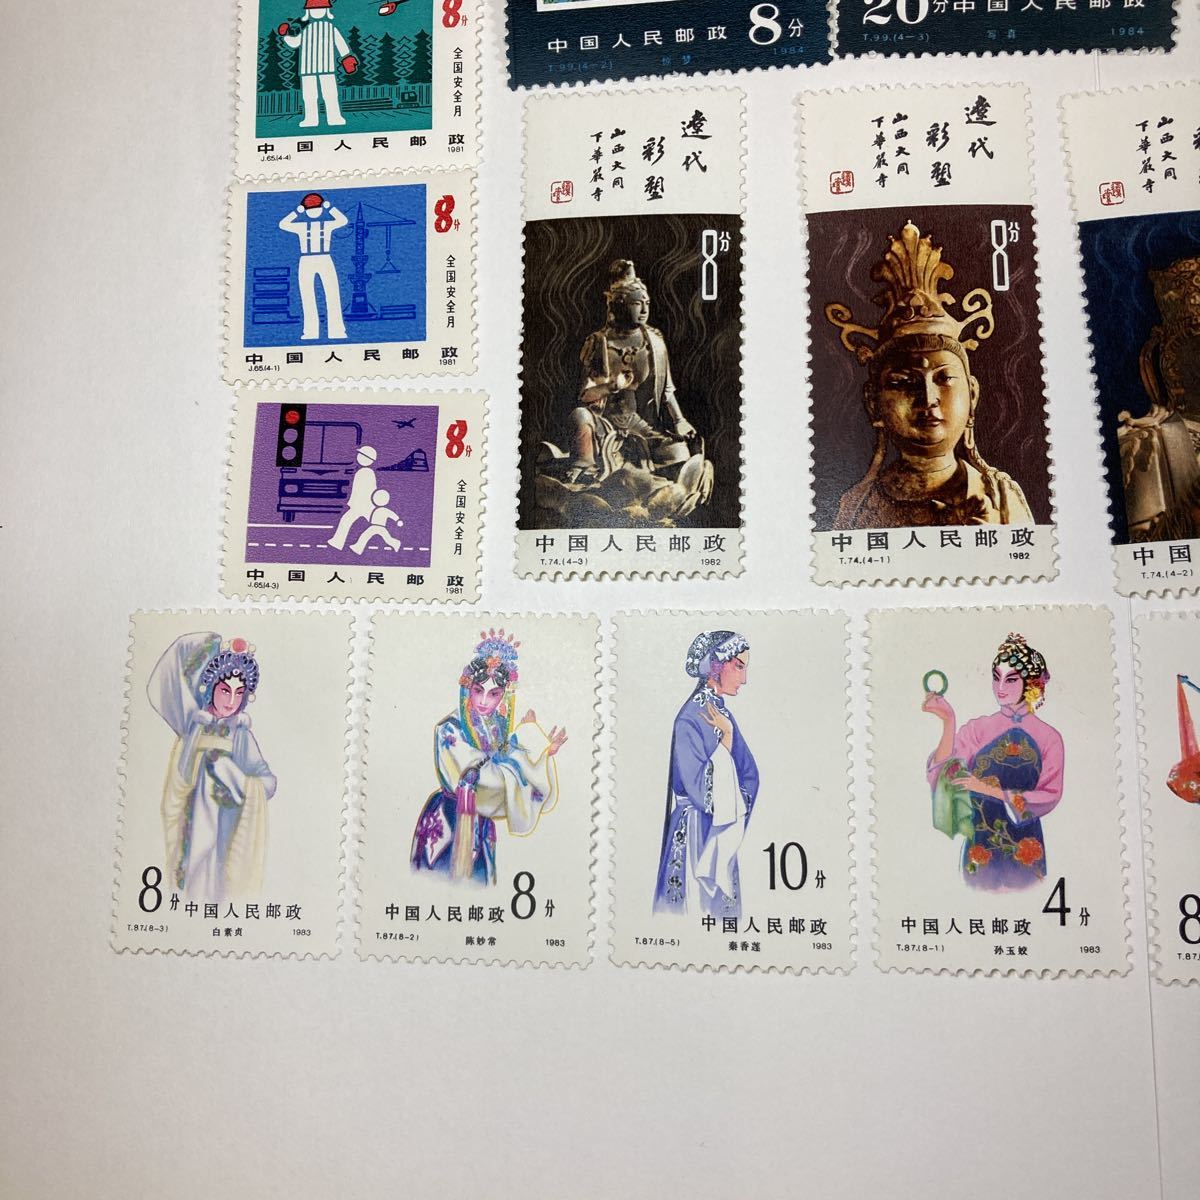 即日発送】 中国切手 遼代の彩色塑像 小型シートとバラ4種の切手「及び 